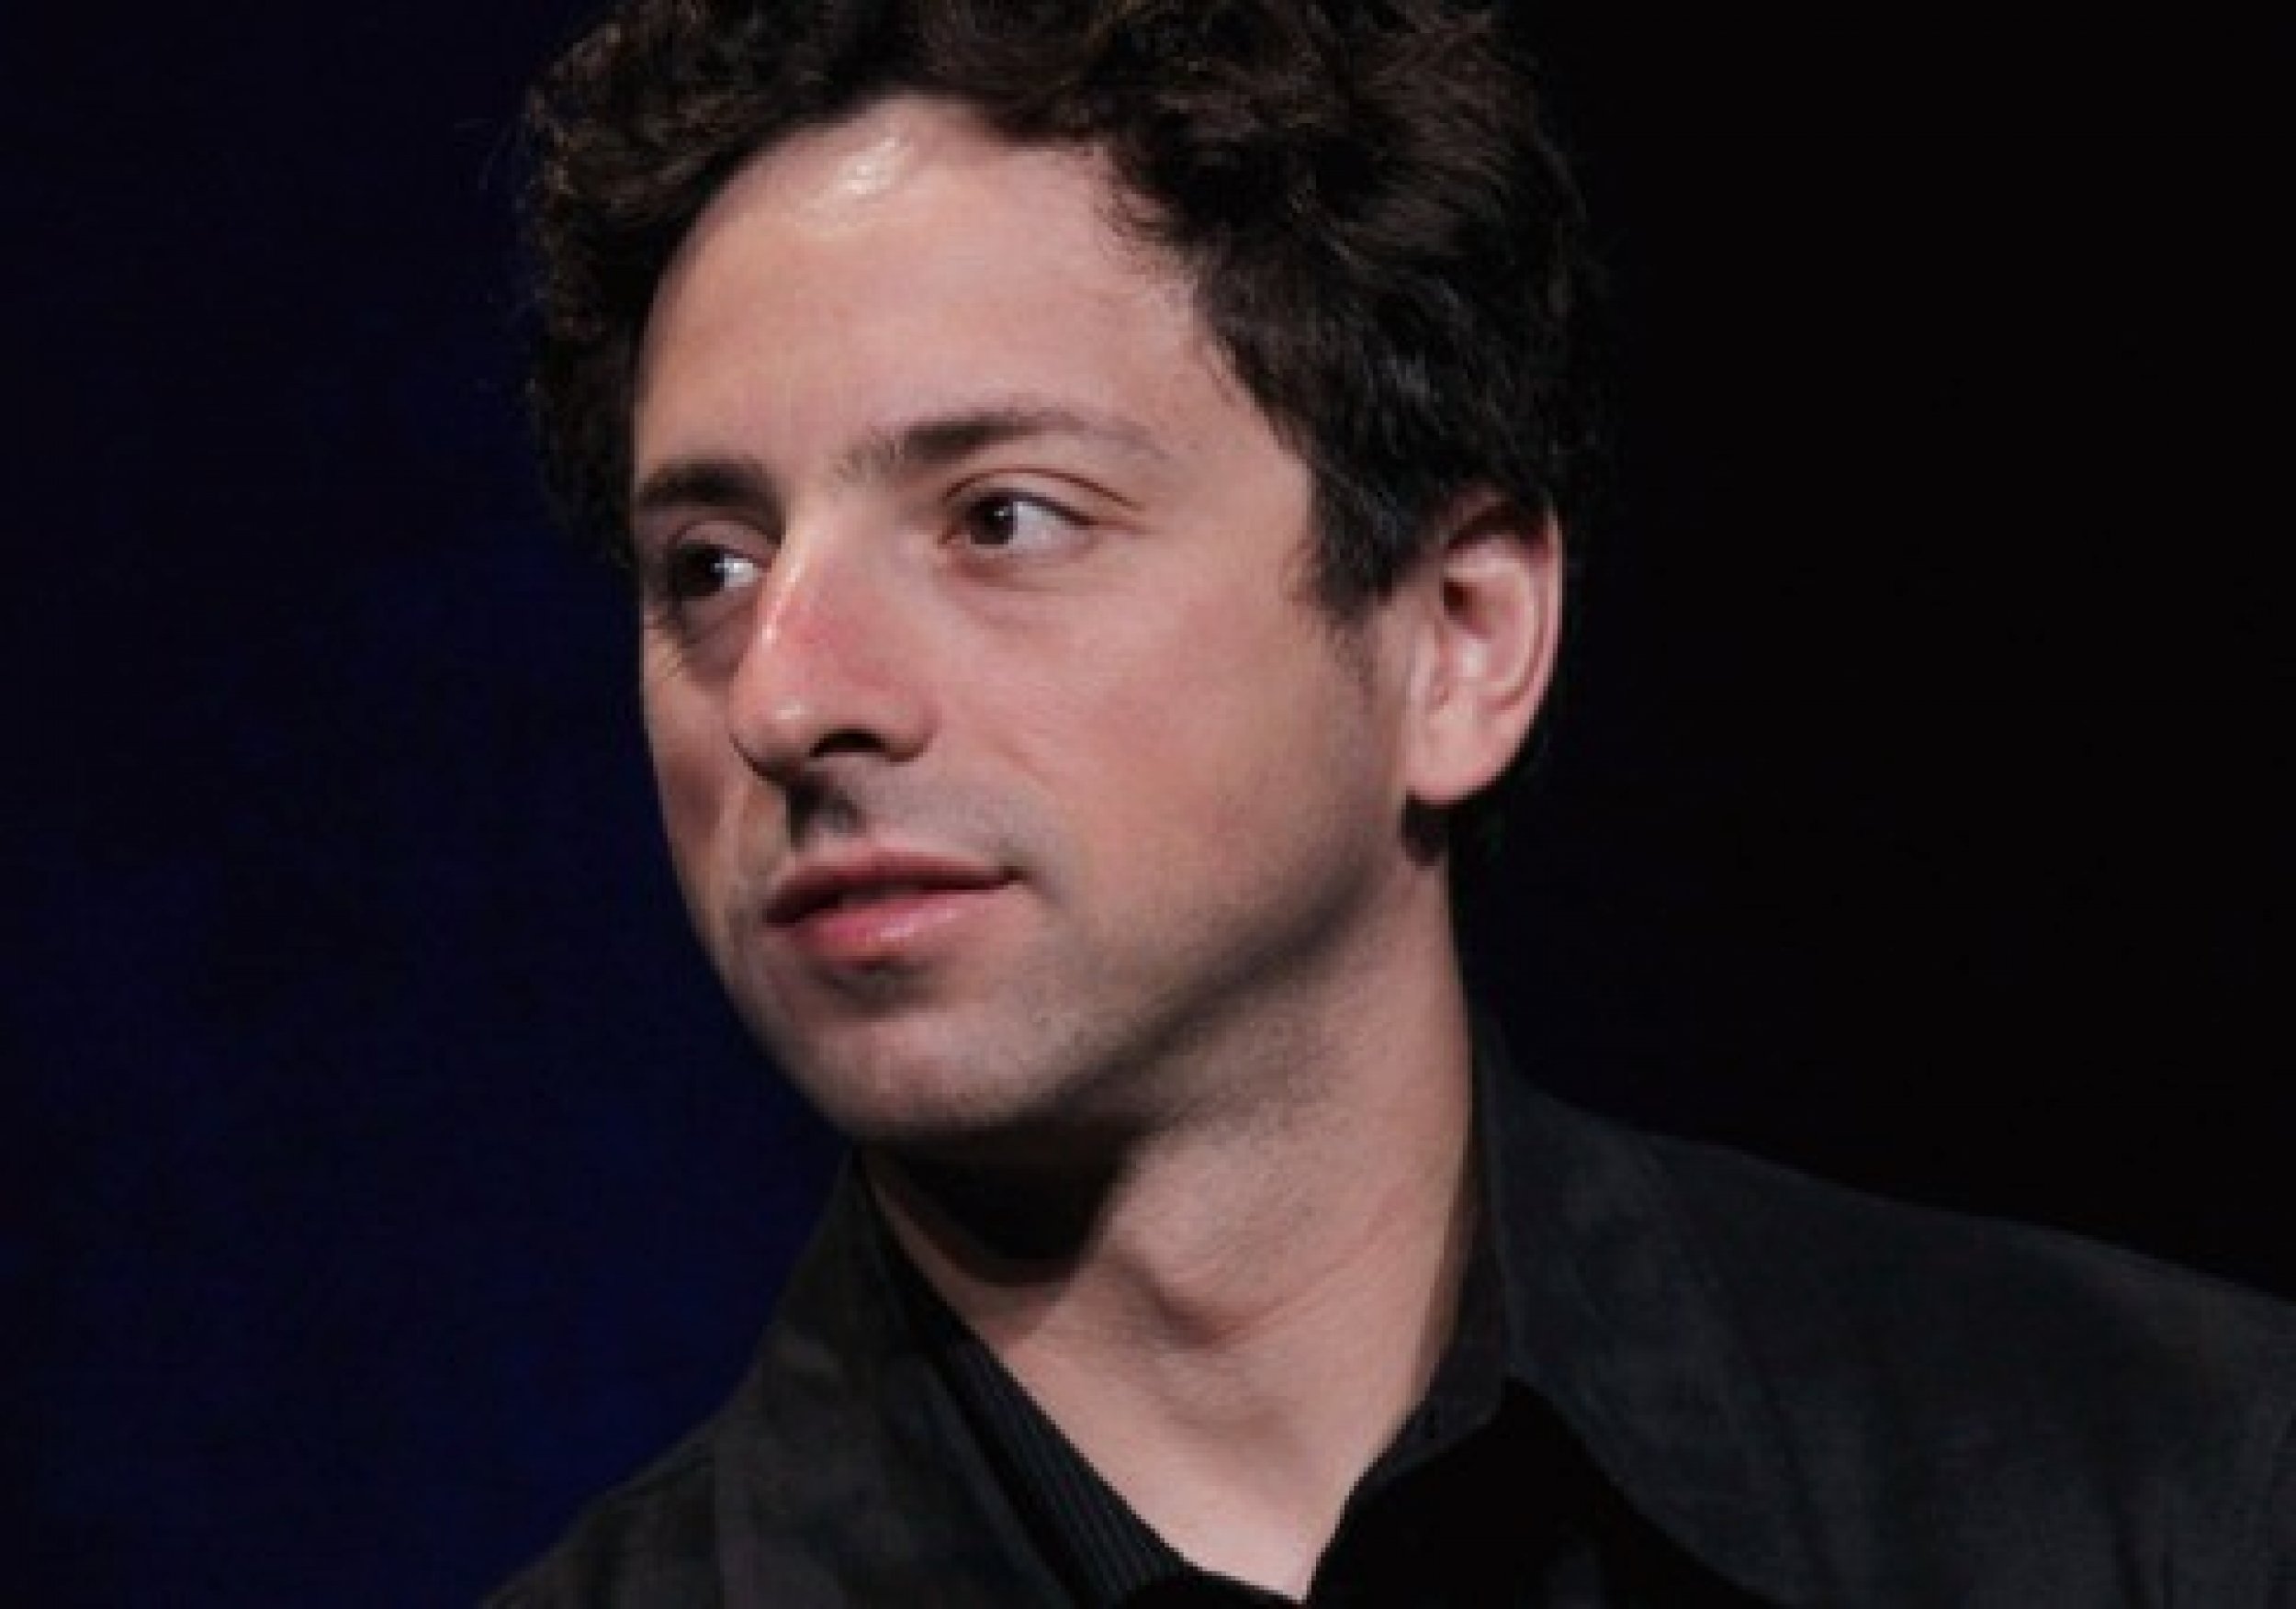 7. Sergey Brin